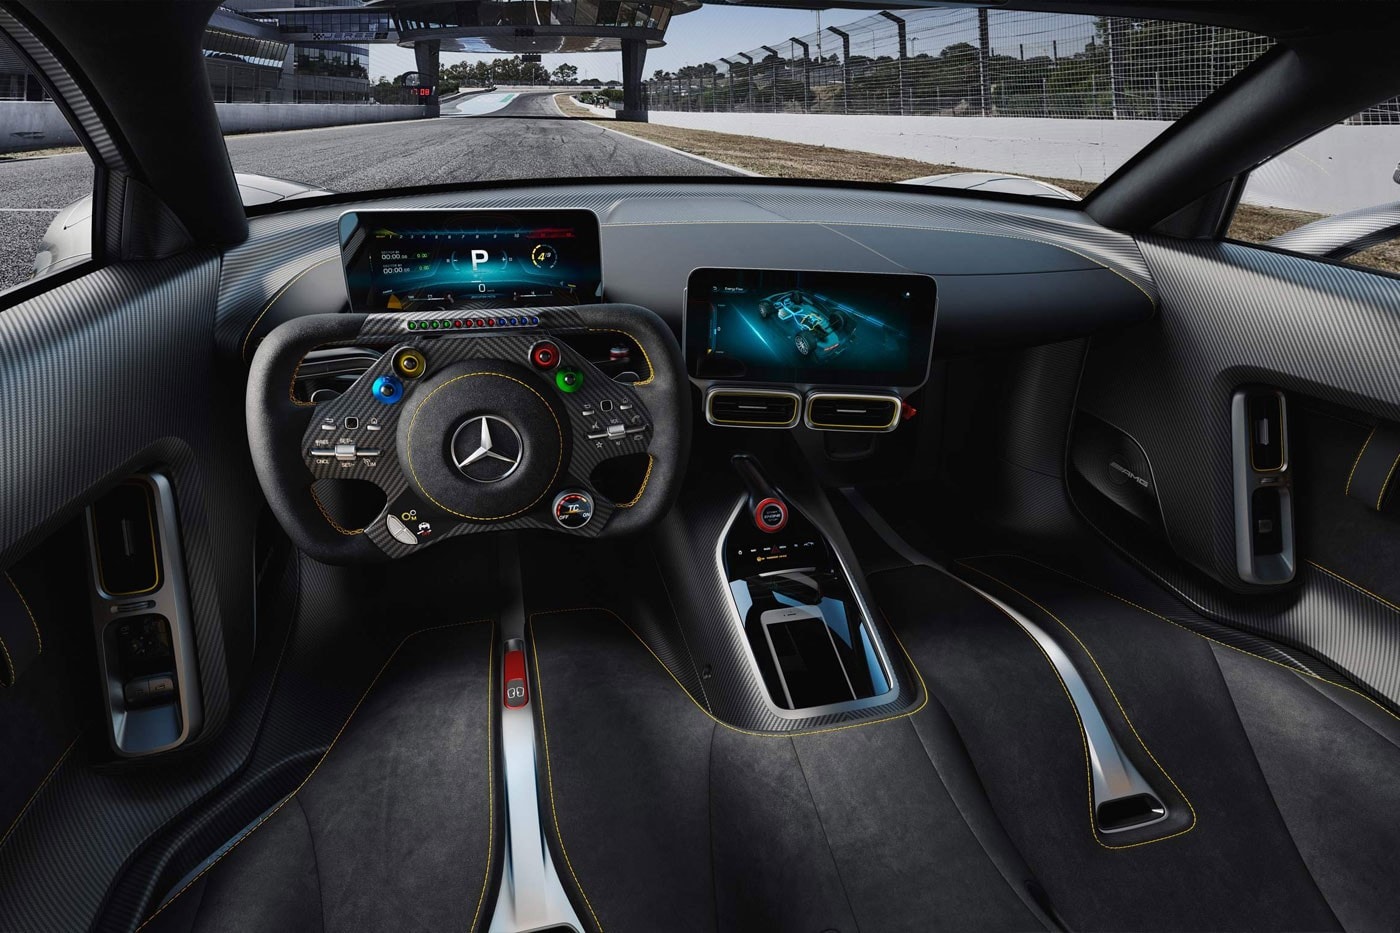 千匹馬力終極合法街車 Mercedes-AMG One 正式發表